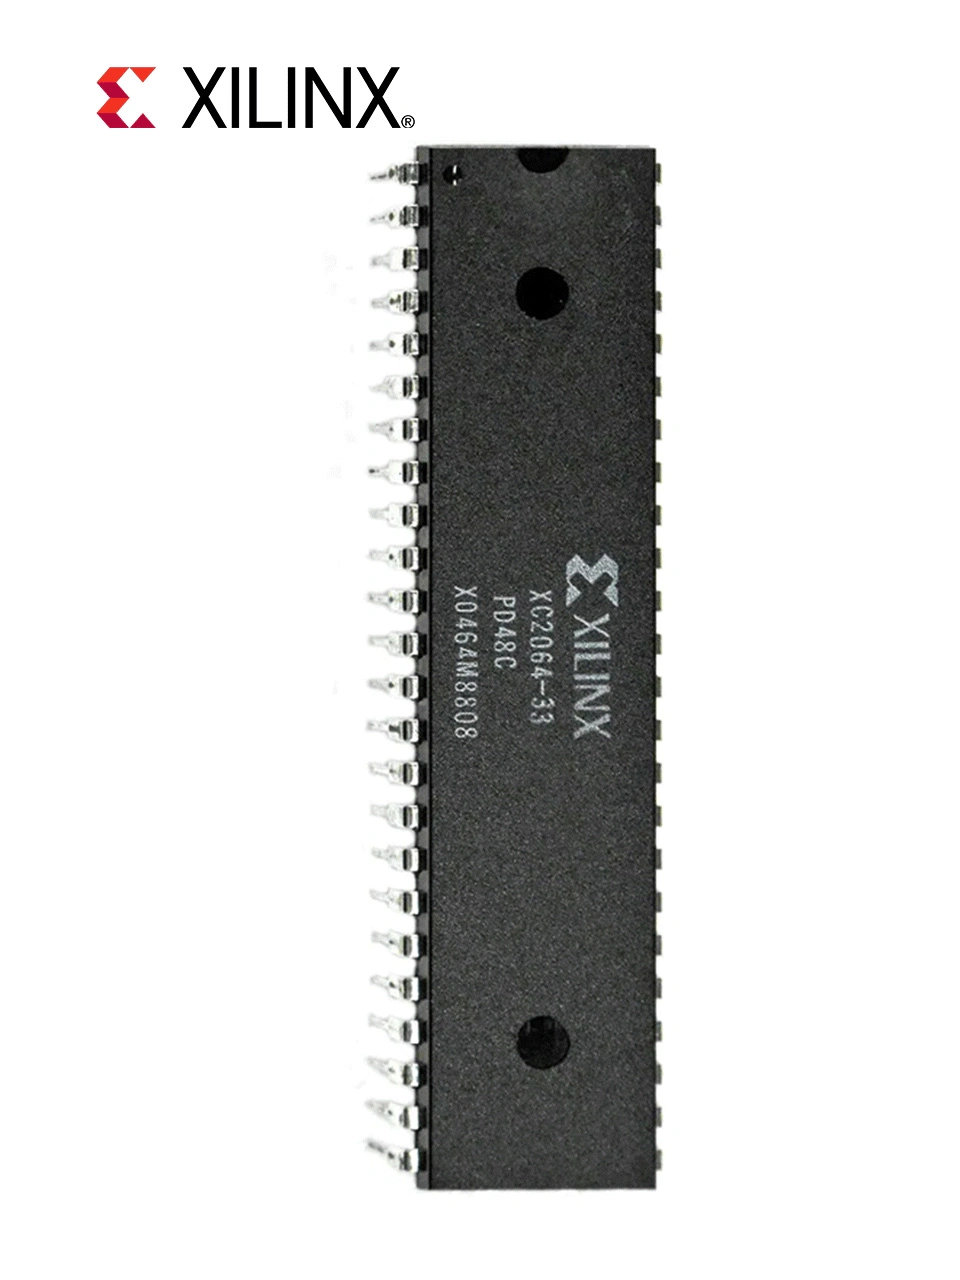 Xilinx IC Soc Cortex-A9 Embedded System on Chip